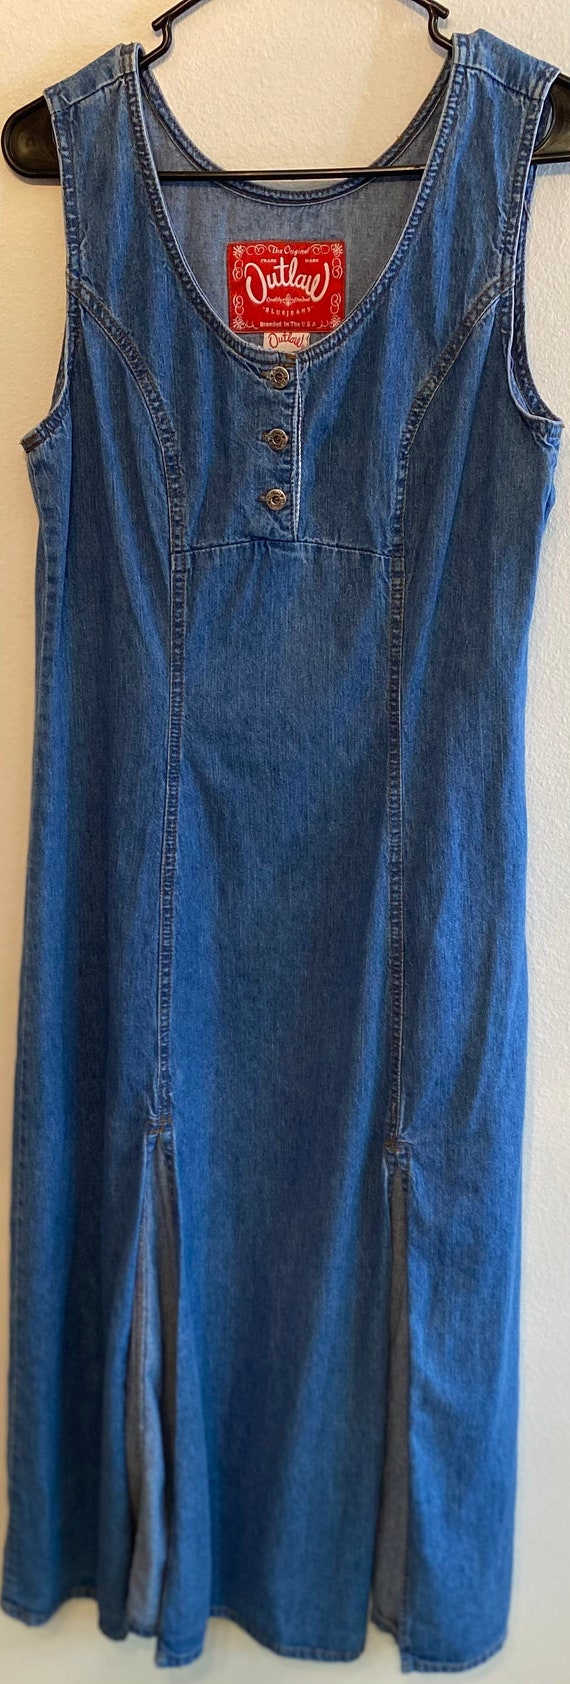 Vintage Outlaw Brand denim jumper dress size 11 m… - image 1